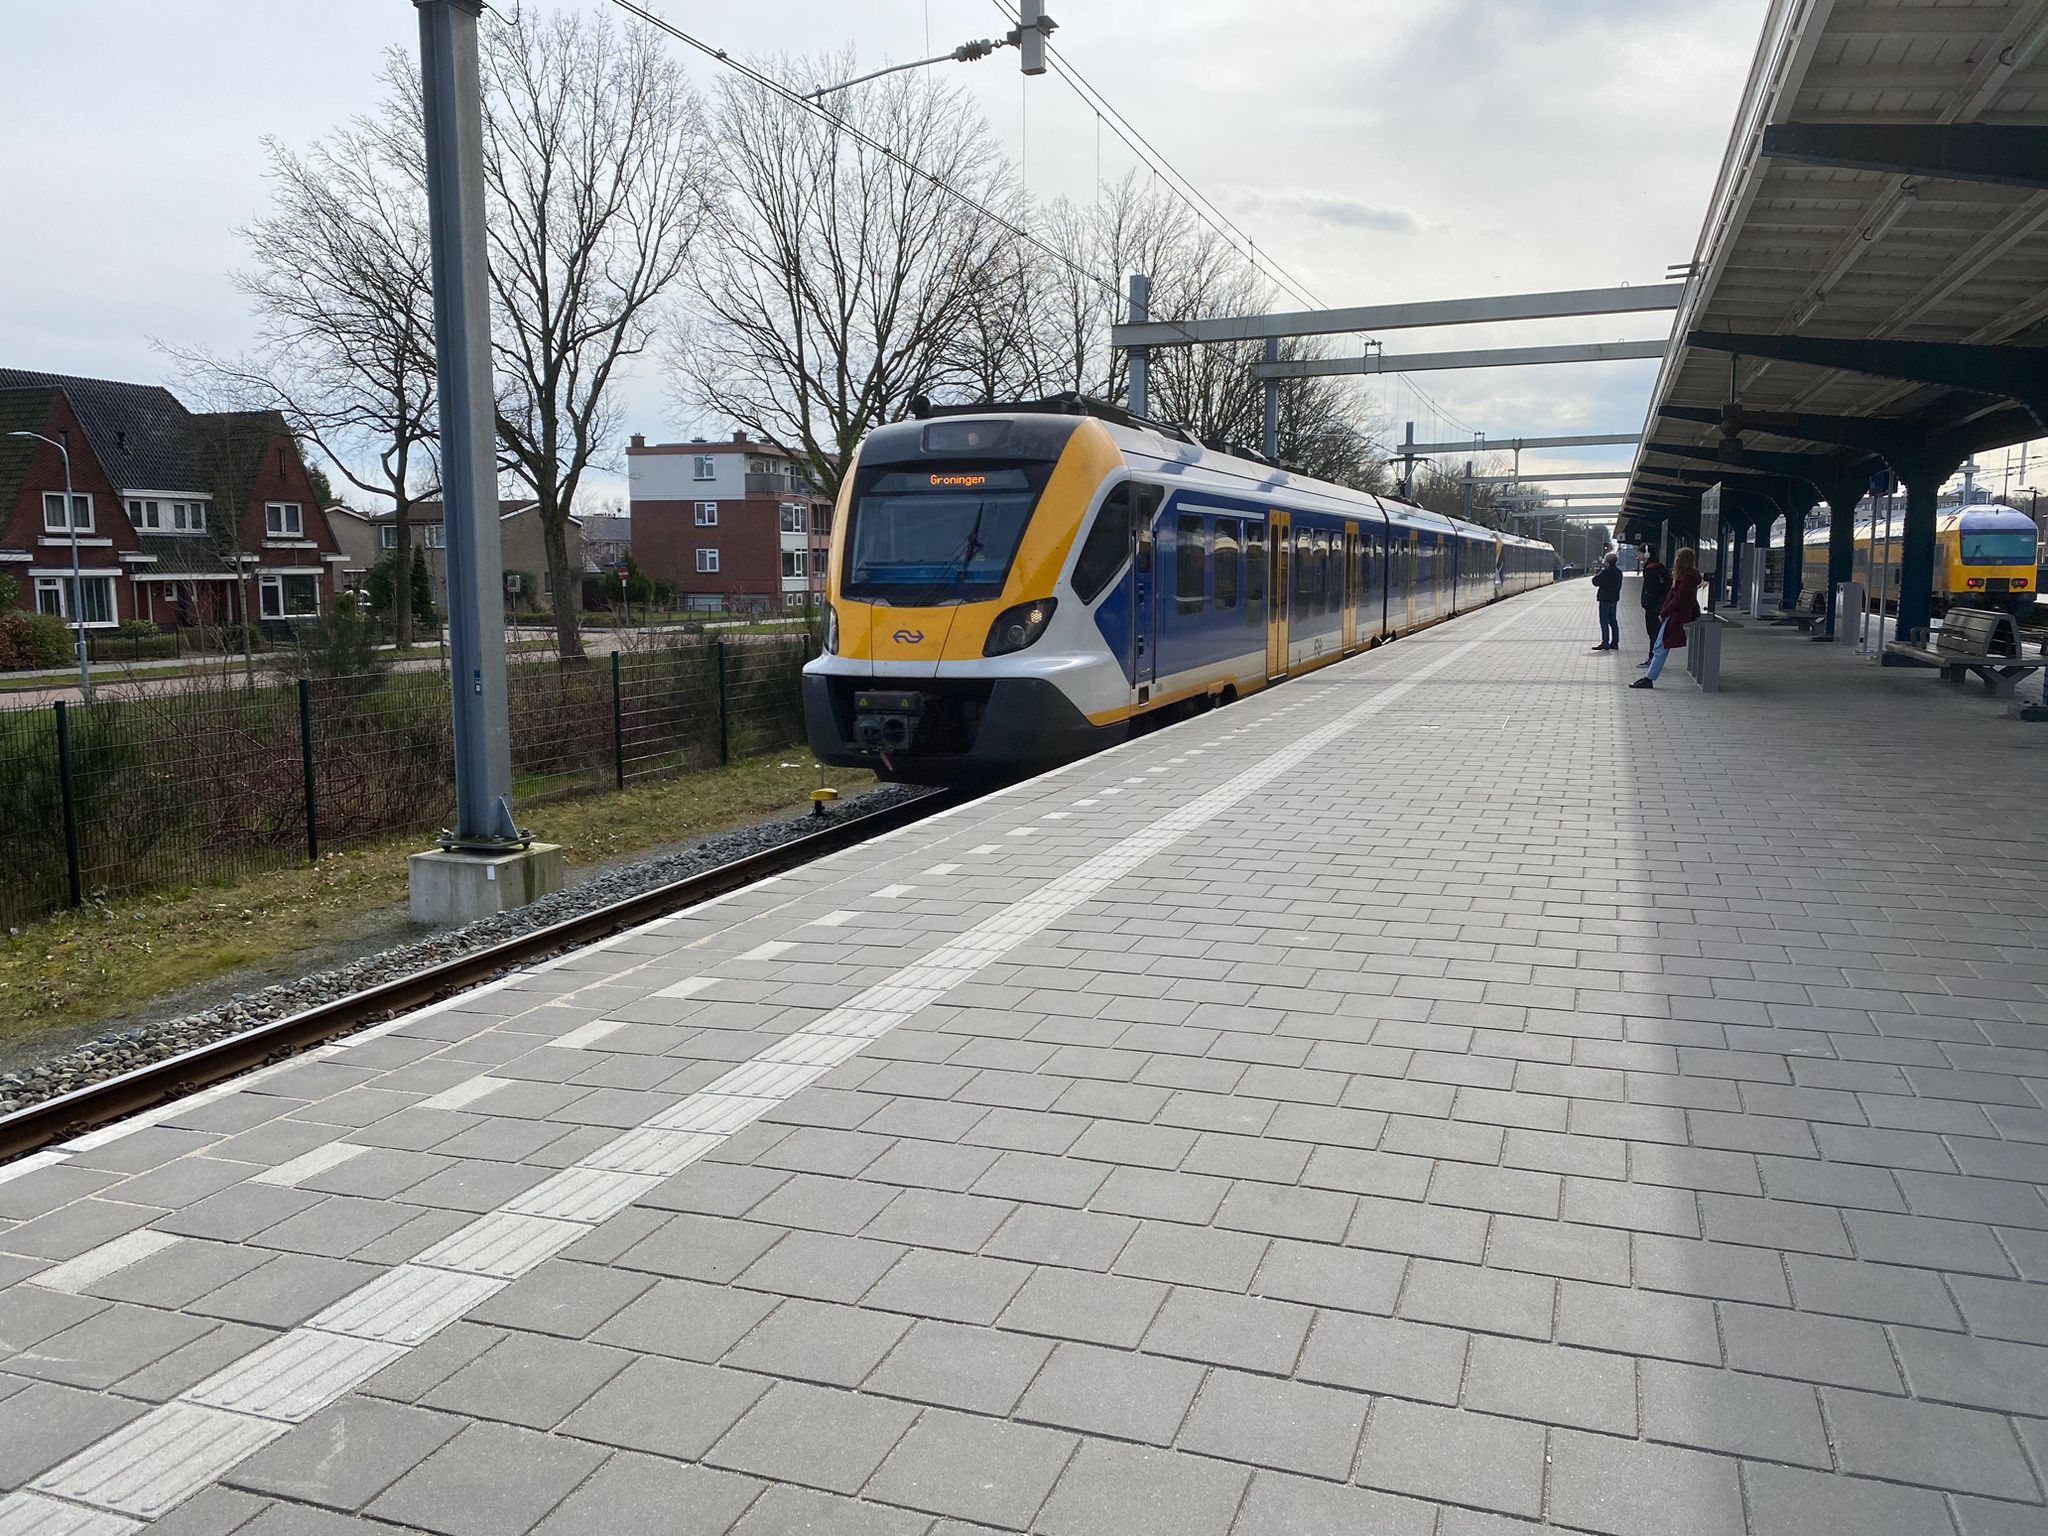 Het station in Assen is te zien, waar net een trein aankomt